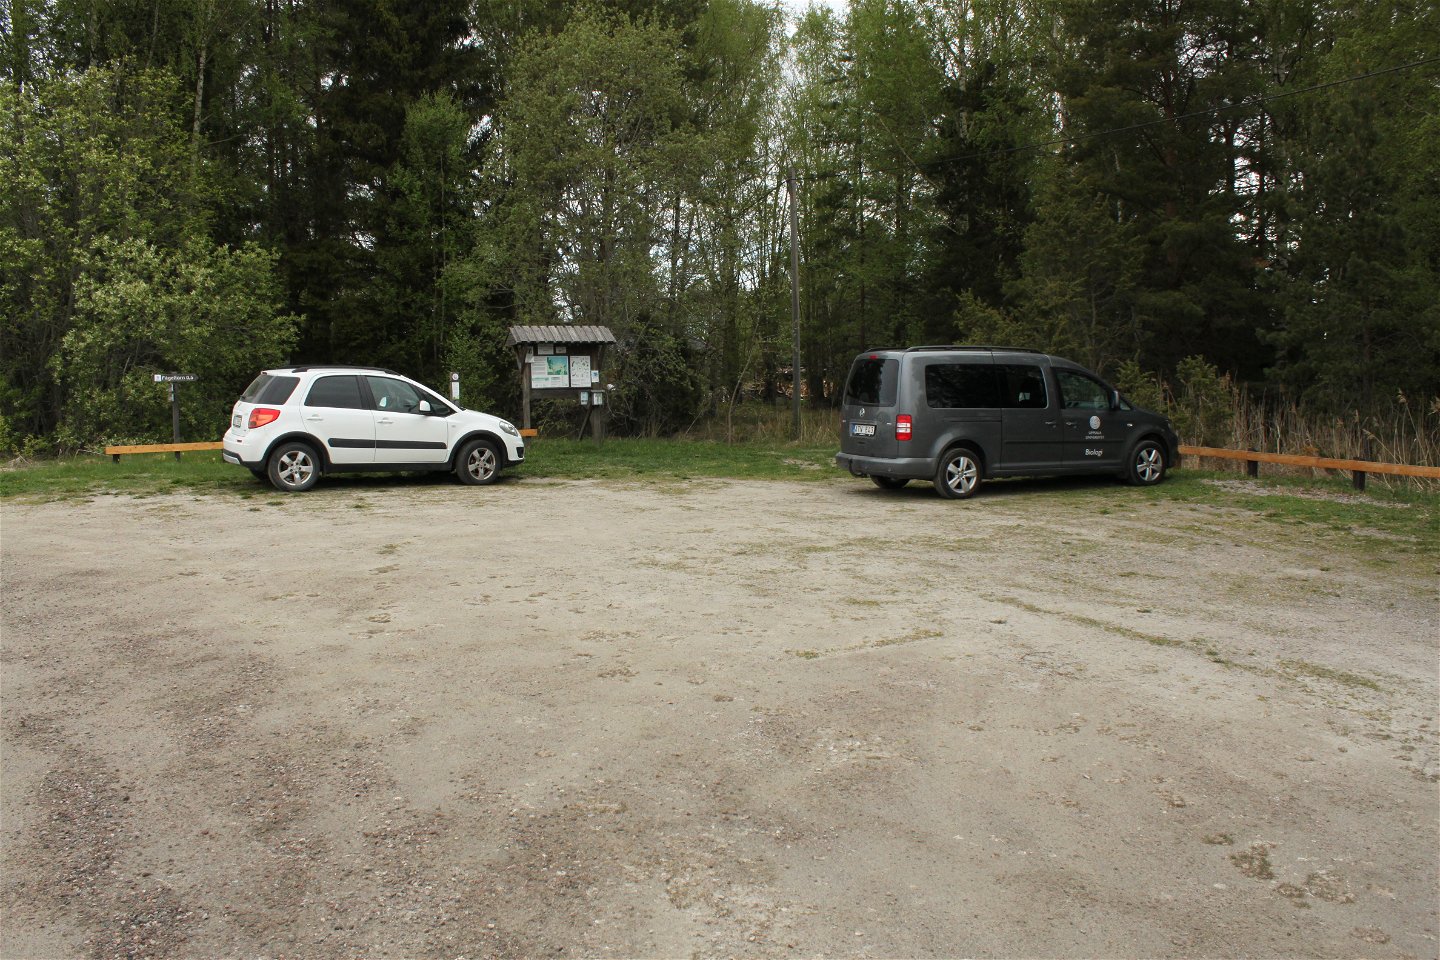 Två bilar står på en stor parkeringsplats. Bredvid parkeringen finns en infromationsskylt.